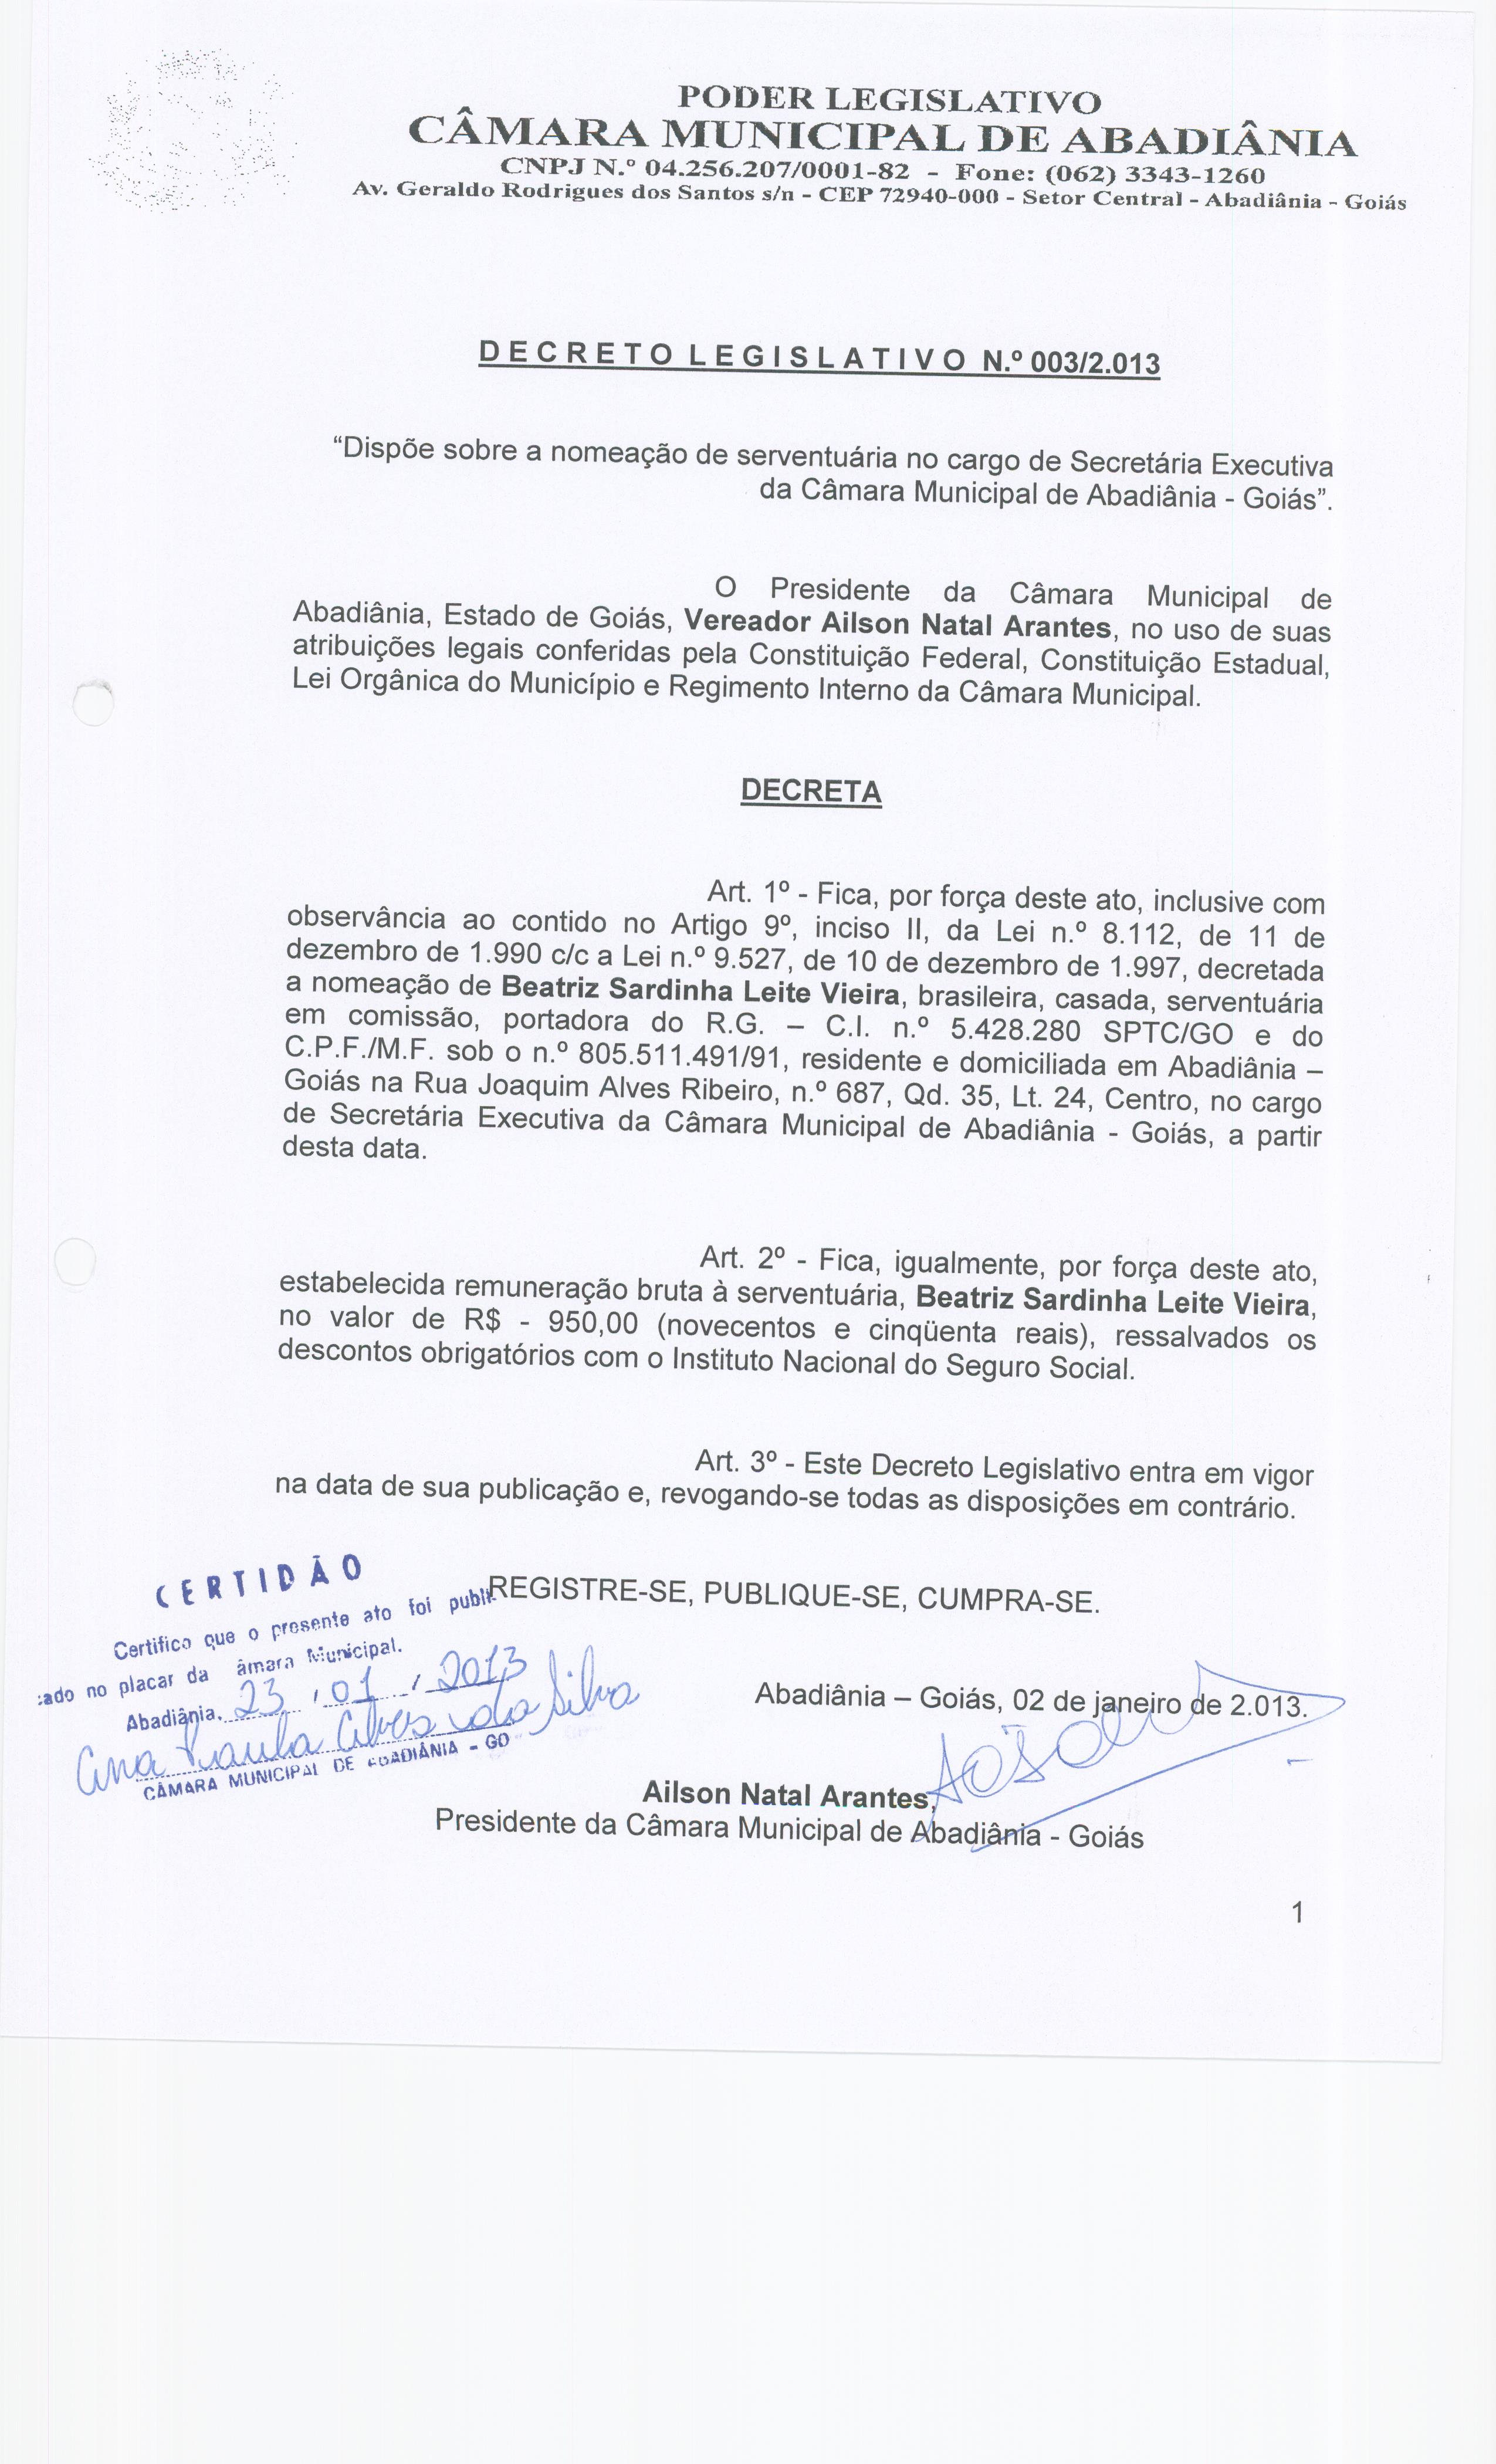 Decreto Legislativo n° 003-2013